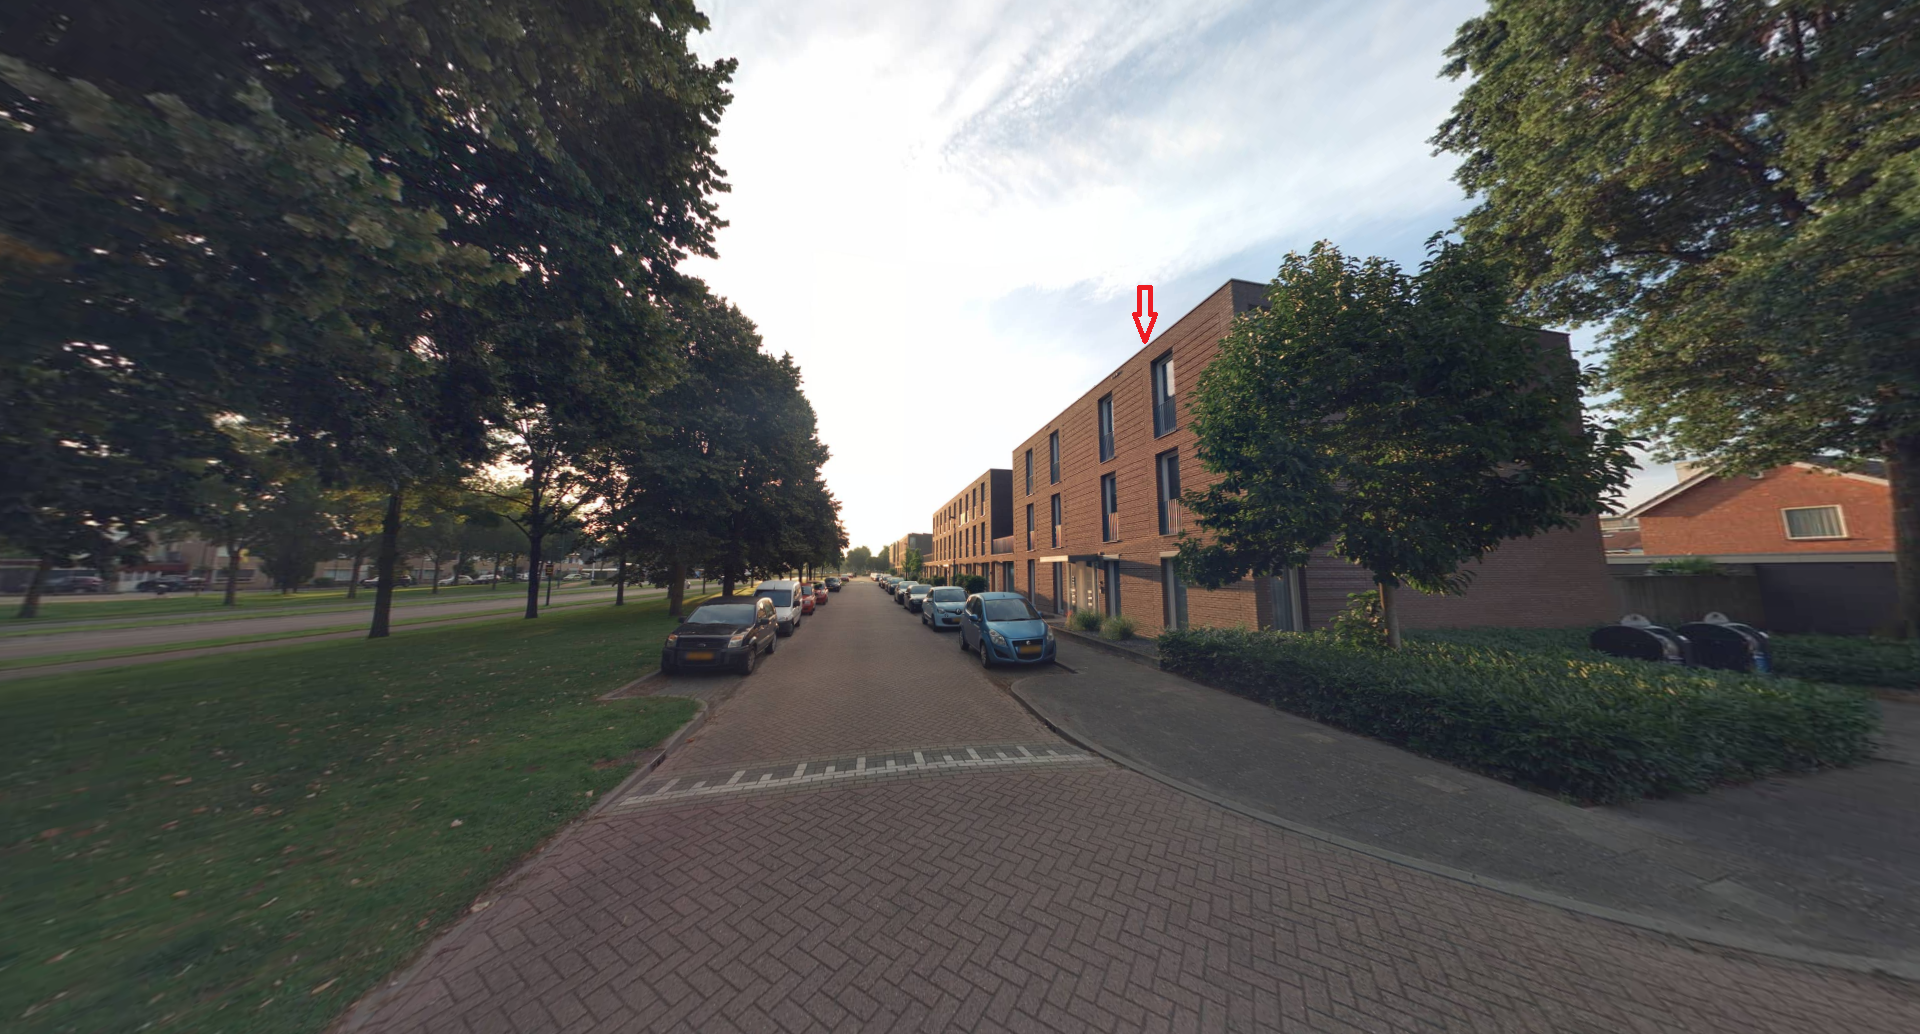 Reggestraat 55, 5101 XM Dongen, Nederland